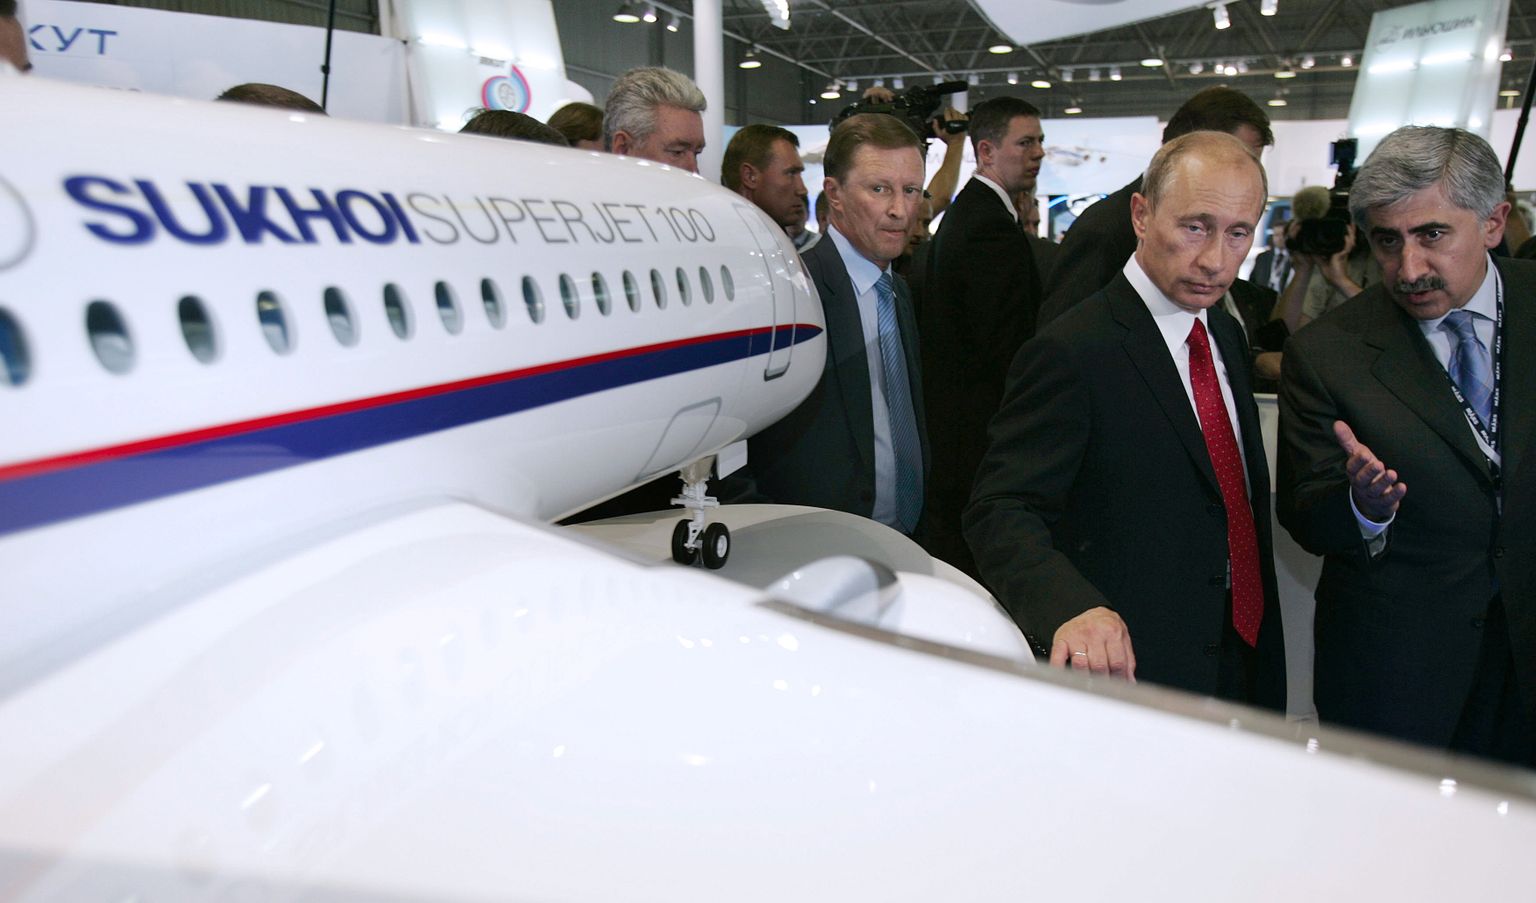 Venemaa president Vladimri Putin 2007. aastal Žukovski lennundusnäitusel. Juba toona oli eesmärgiks Suhhoi Superjet 100 projekti abil vähendada Boeingu ja Airbusi turuosa. Samale projektile loodetakse veel praegugi elu sisse puhuda.